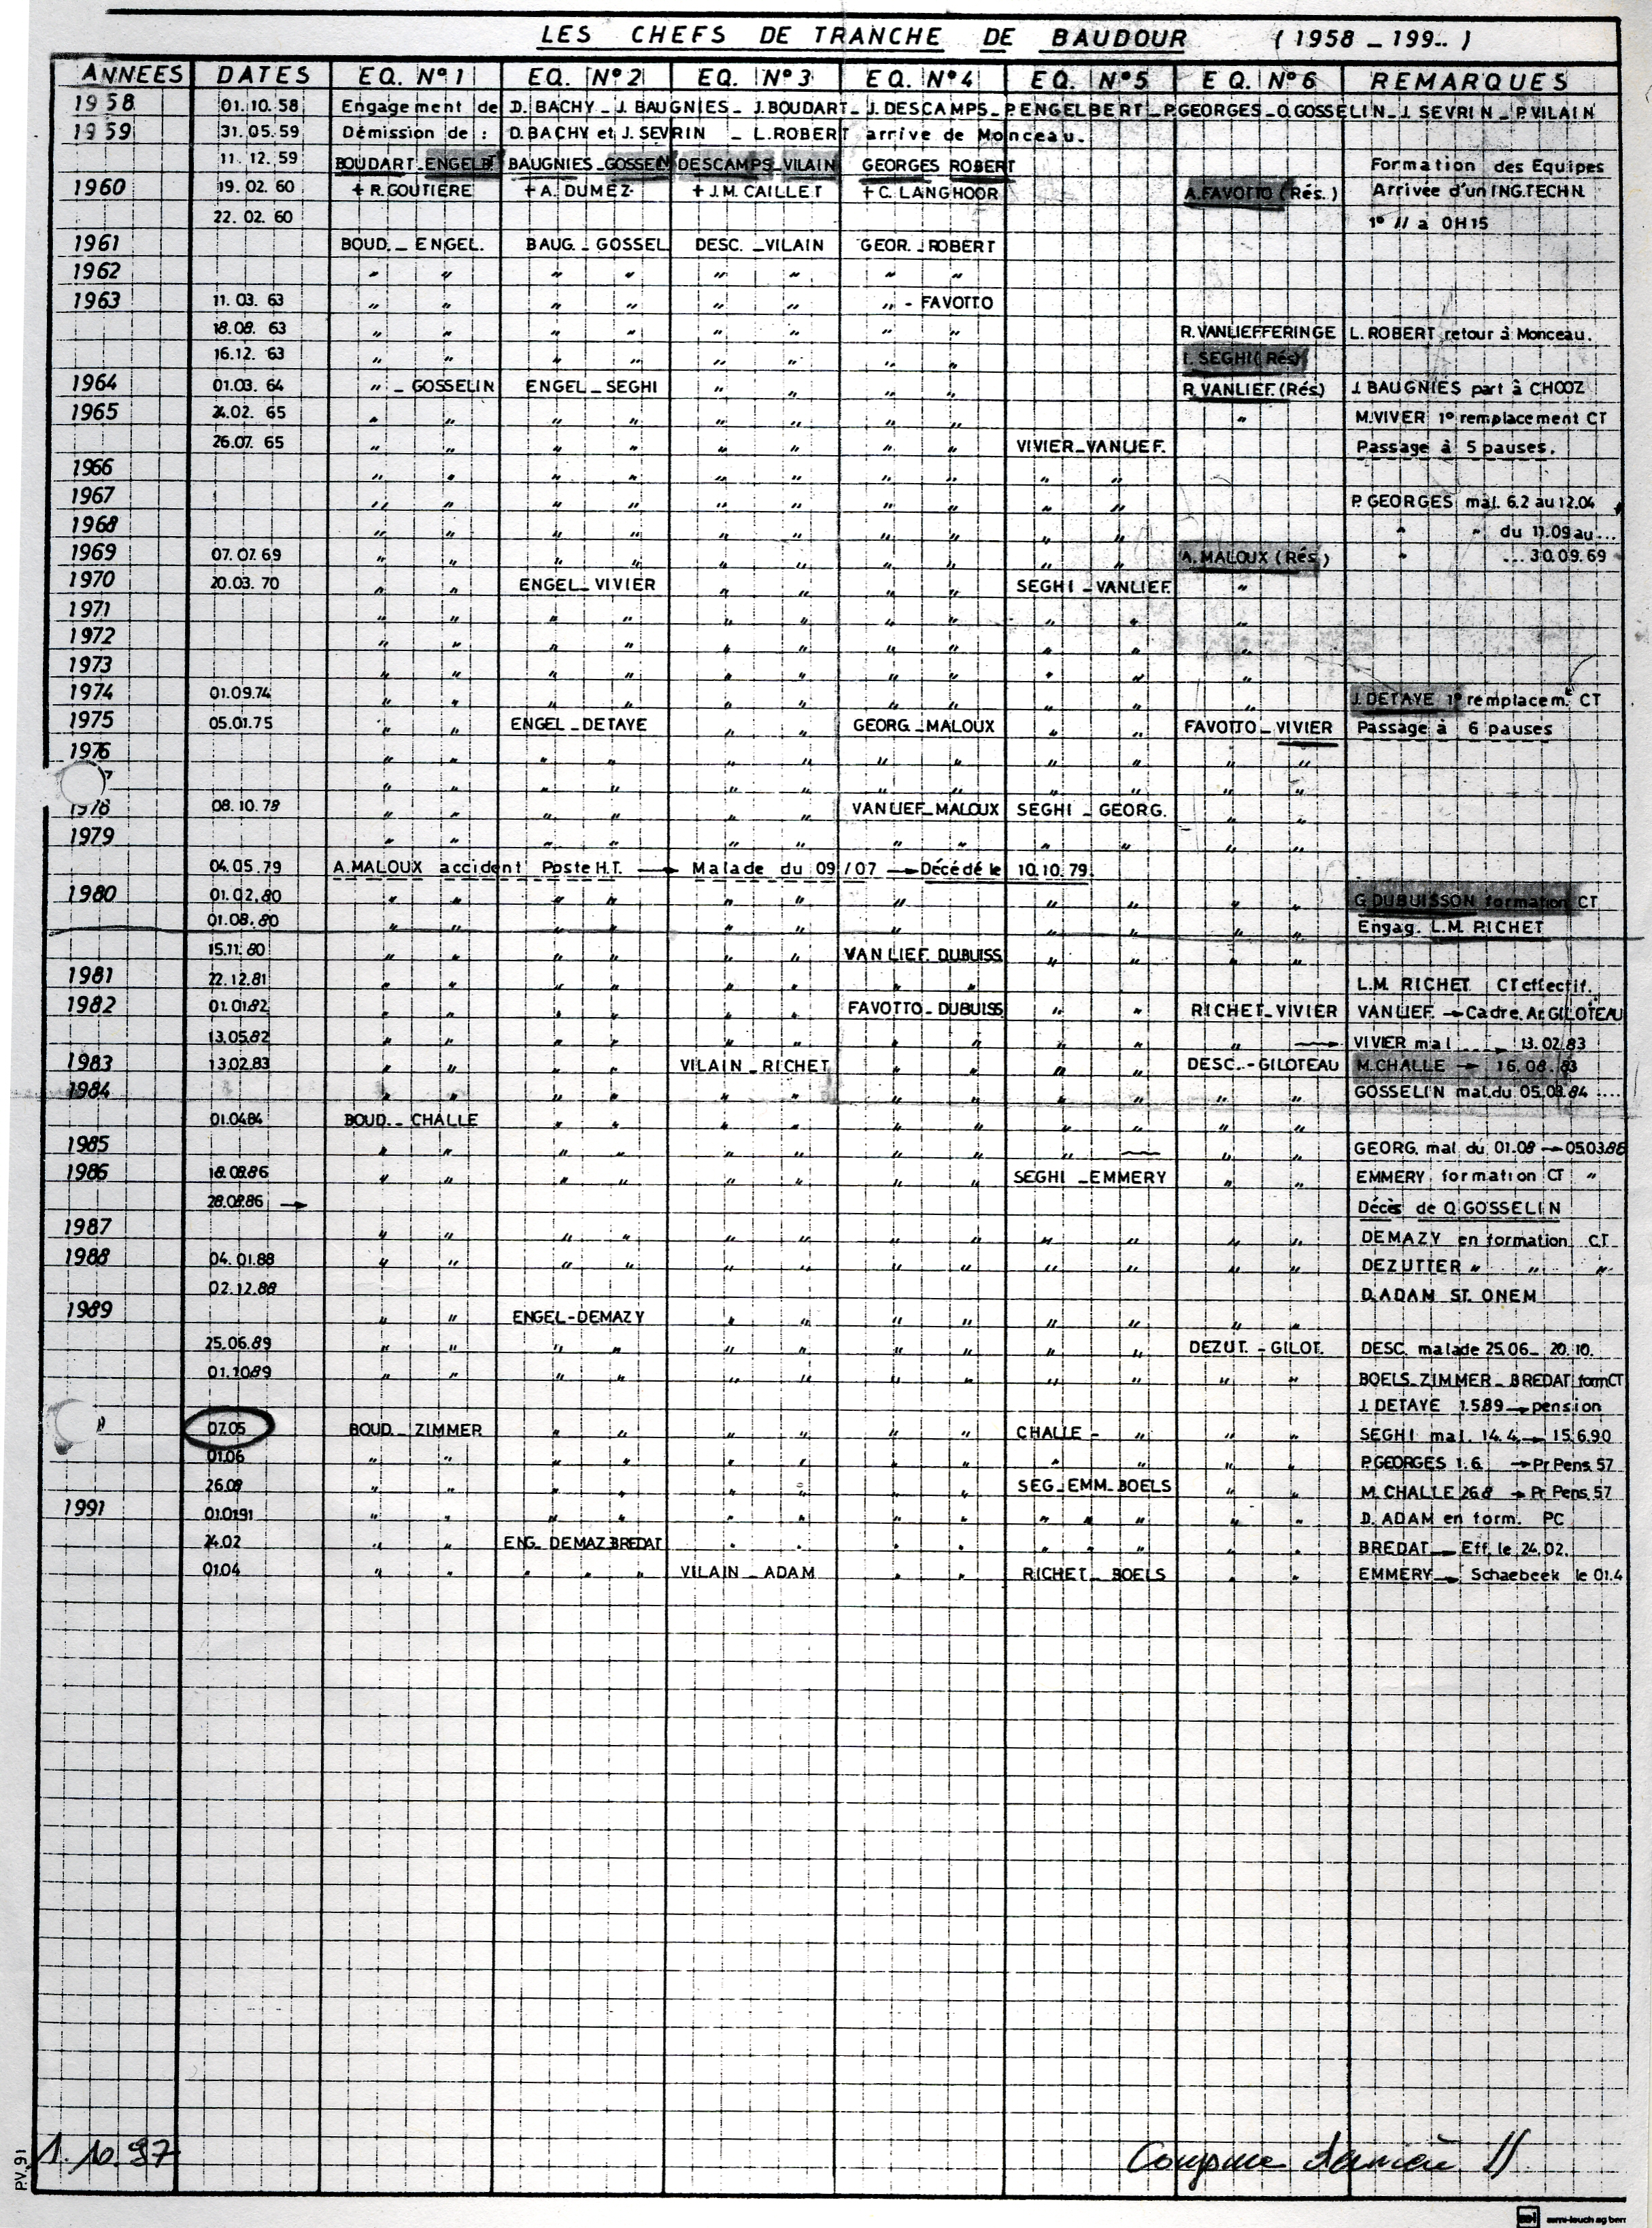 Baudour : Liste des chefs de tranche de l'ancienne centrale au charbon (1958 à 1997).